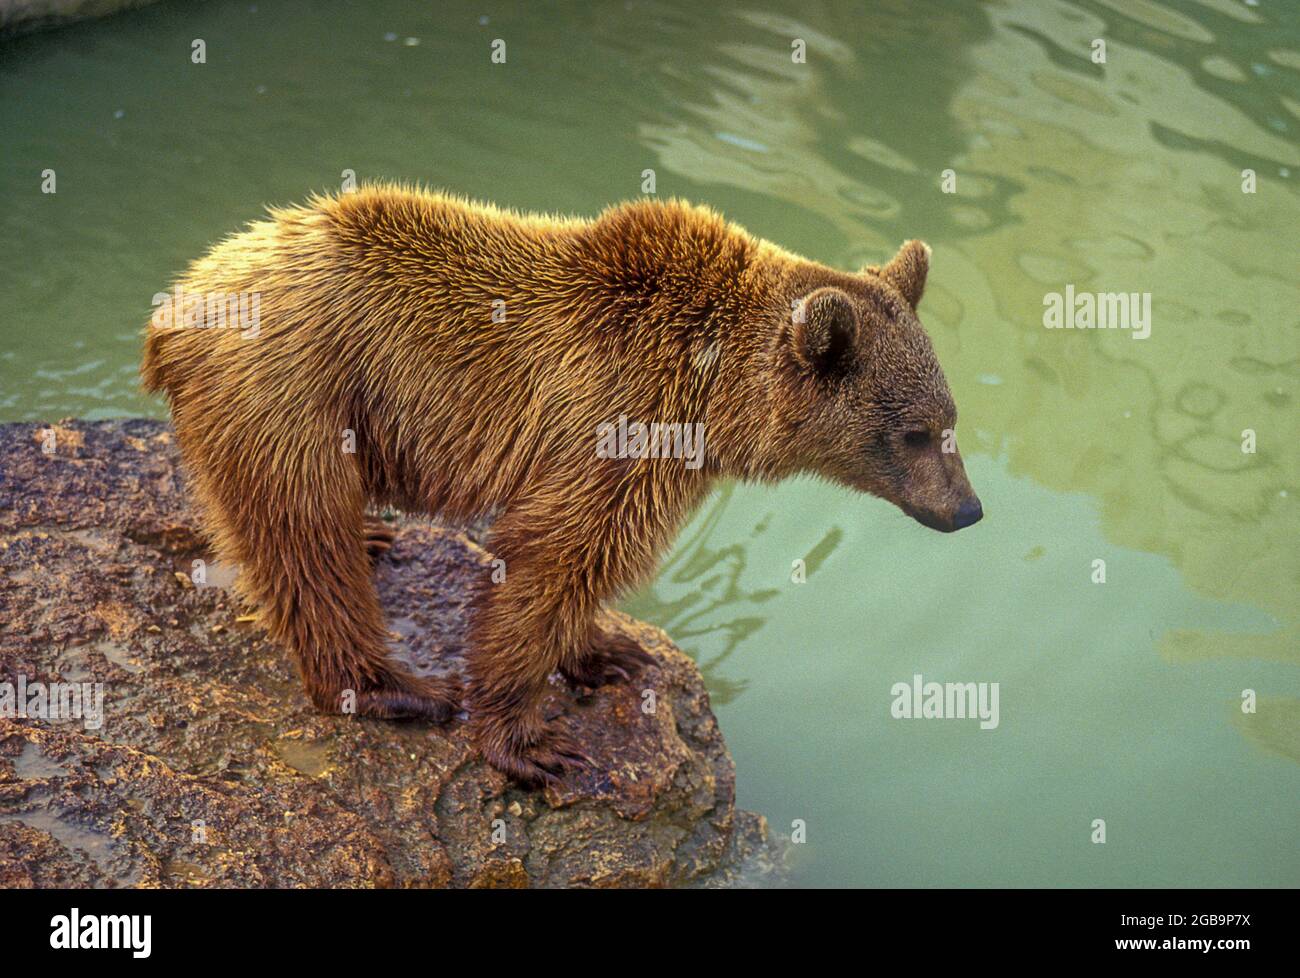 L'ours brun syrien (Ursus arctos syriacus ou Ursus arctos arctos) est une sous-espèce relativement petite d'ours brun originaire du Moyen-Orient et du Moyen-Orient Banque D'Images